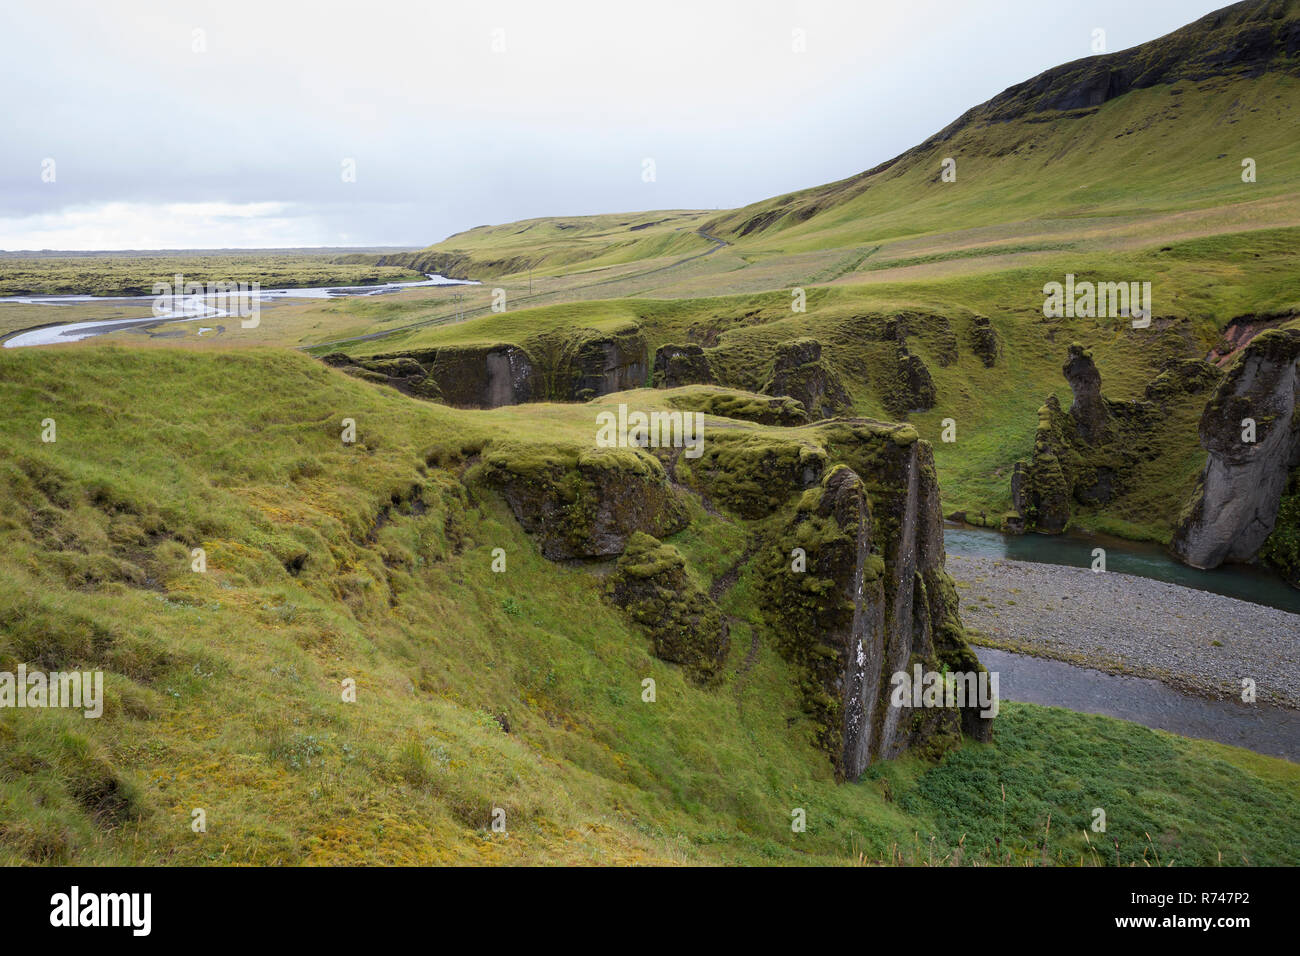 Fjaðrárgljúfur-Schlucht, Fjathrargljufur-Schlucht, Schlucht, Canyon im Süden von Island, durch die Schlucht fließt der namensgebende Fluss Fjaðrá, can Stock Photo